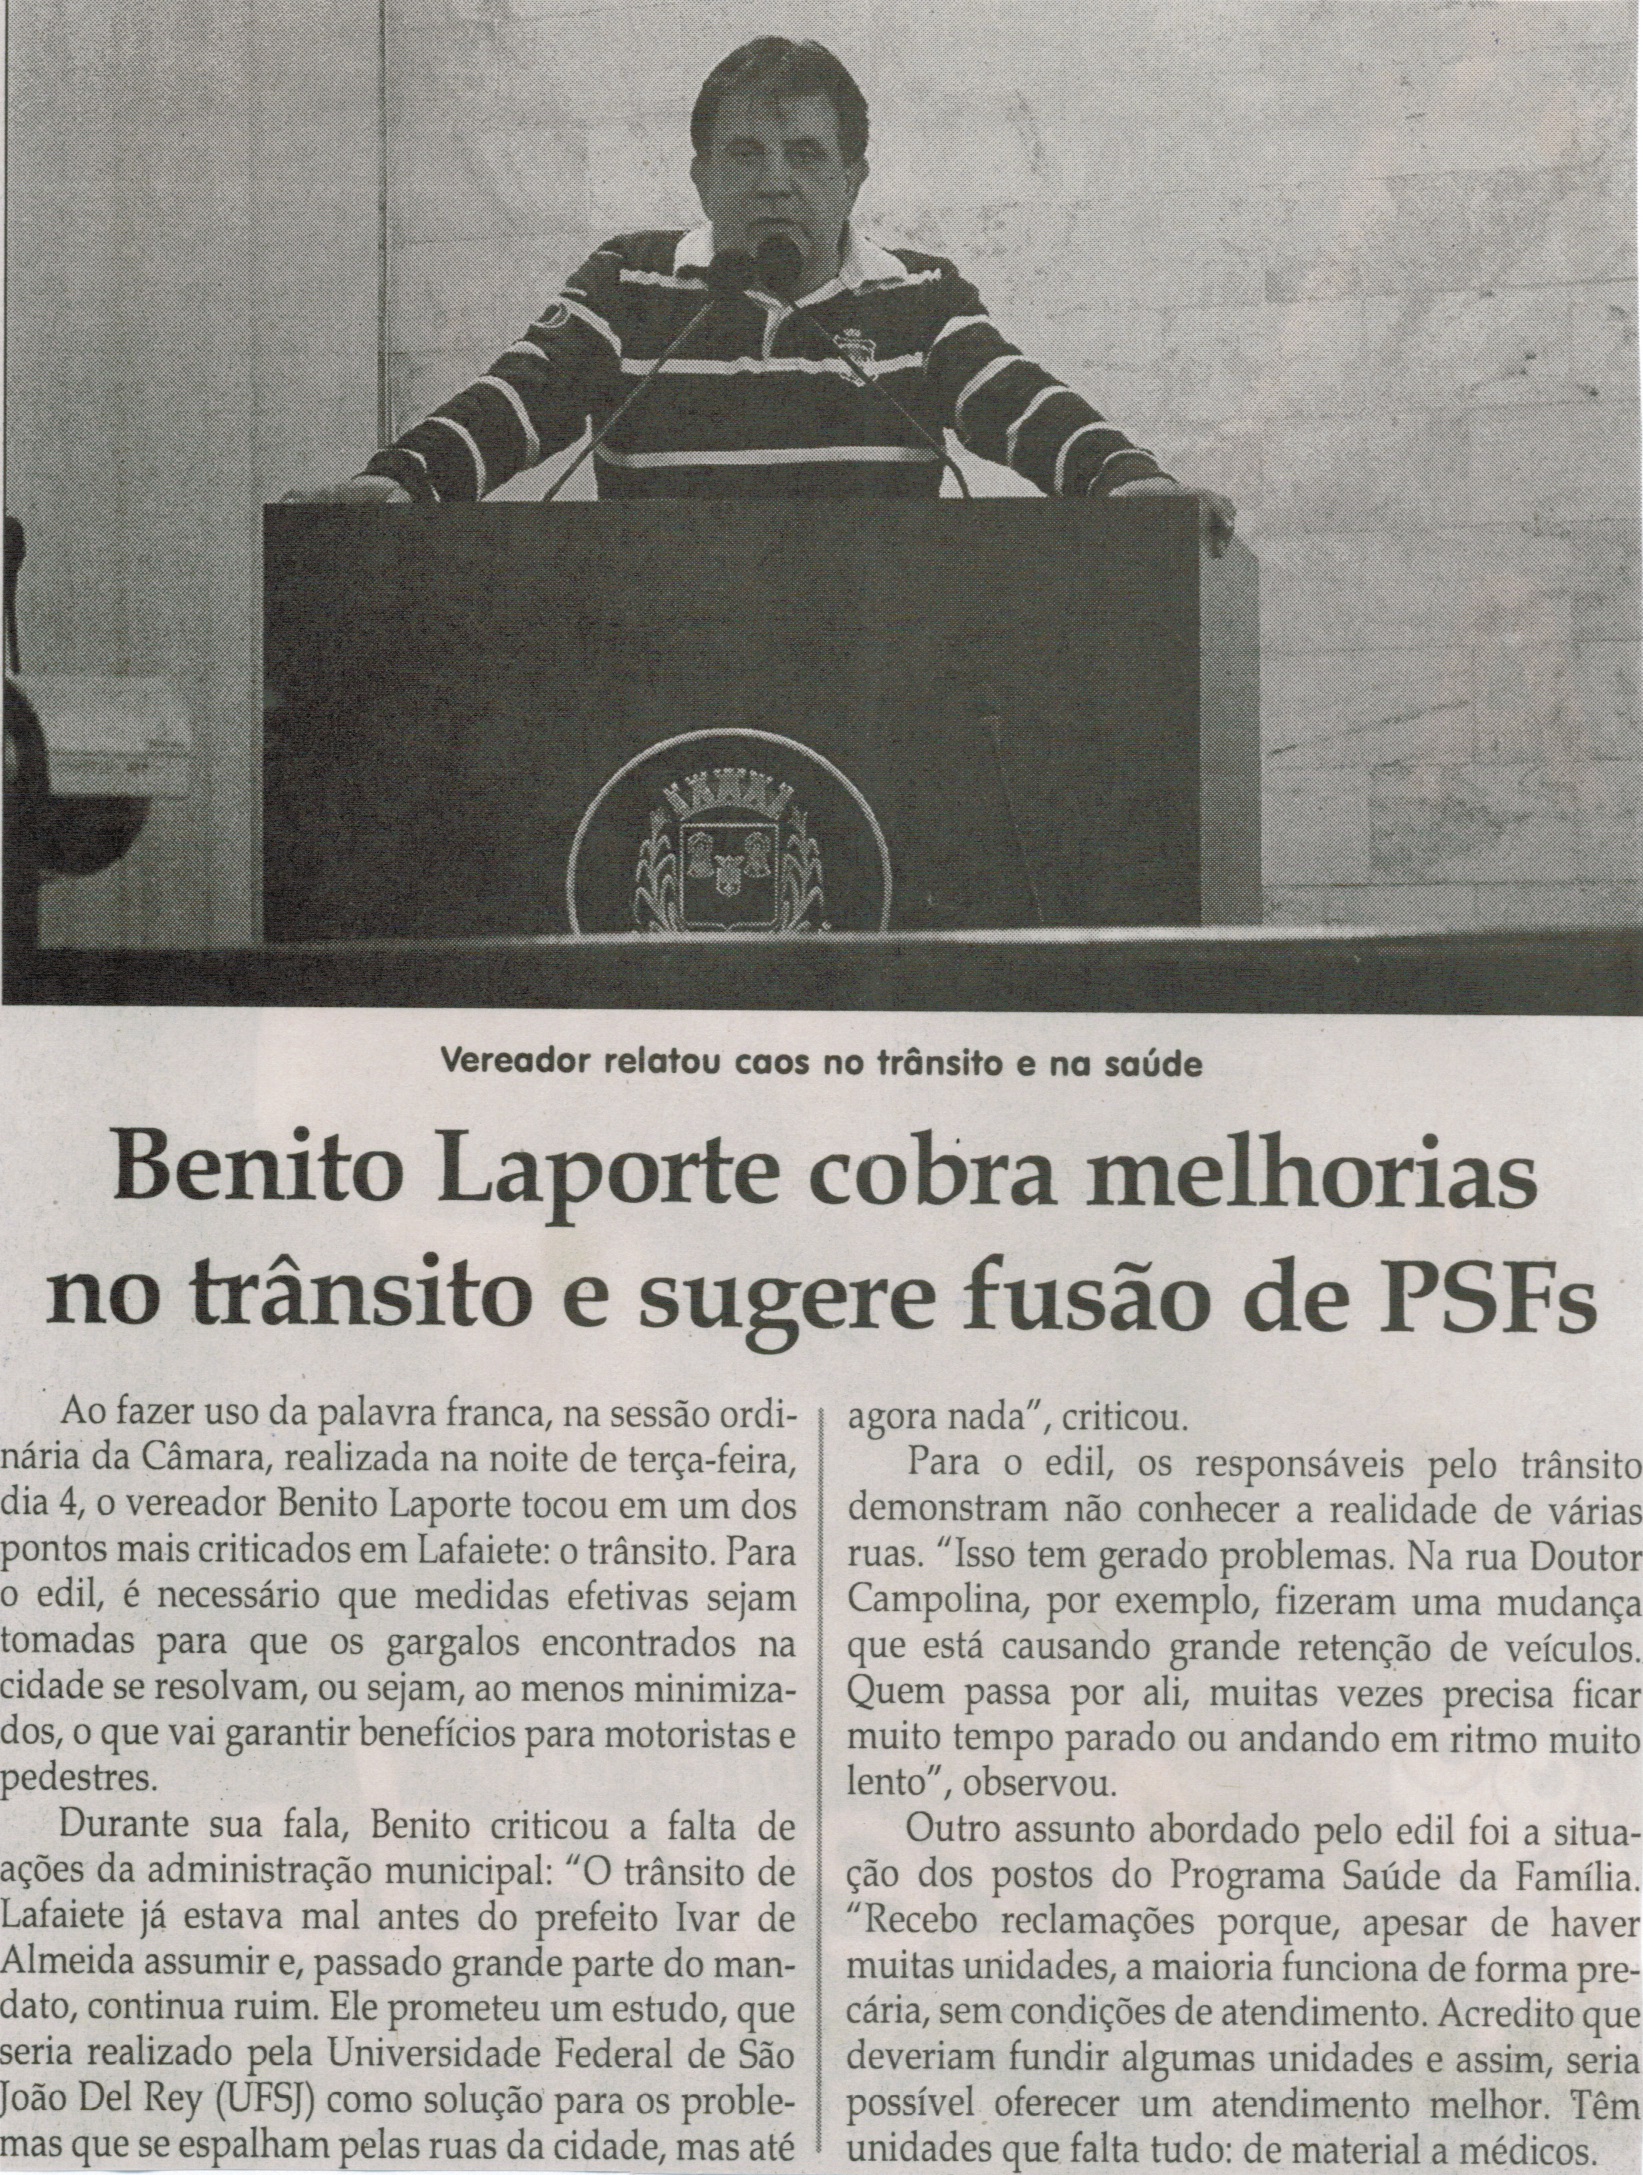 Benito Laporte cobra melhorias no trânsito e sugere fusão de PSFs. Jornal Correio da Cidade, Conselheiro Lafaiete, 21 ago. 2015, p. 04.